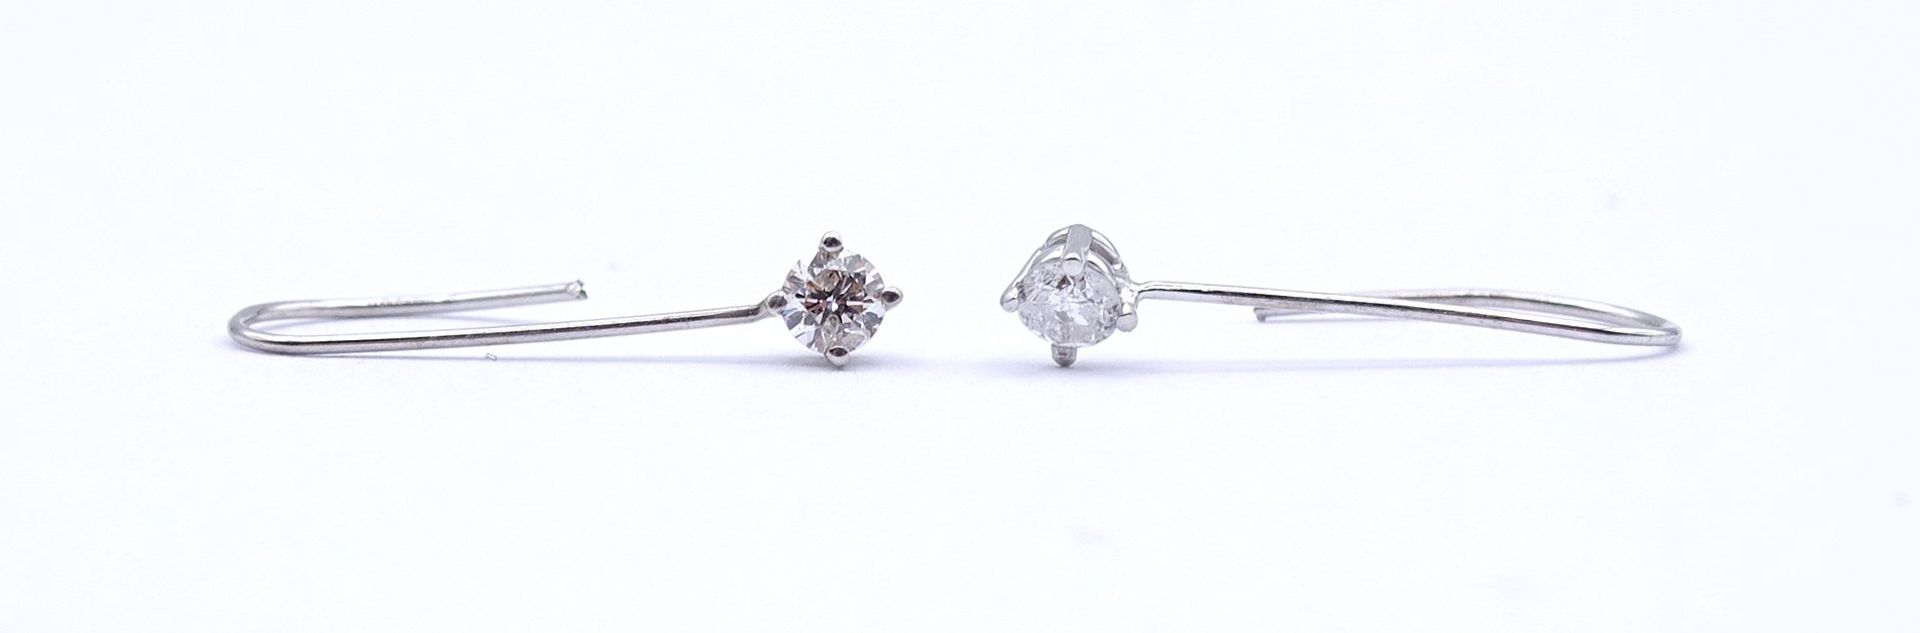 Paar Ohrhänger mit Diamanten 0,18ct., WG 14K ungest., L. 1,7cm, zus. 0,27g. Gold geprüft